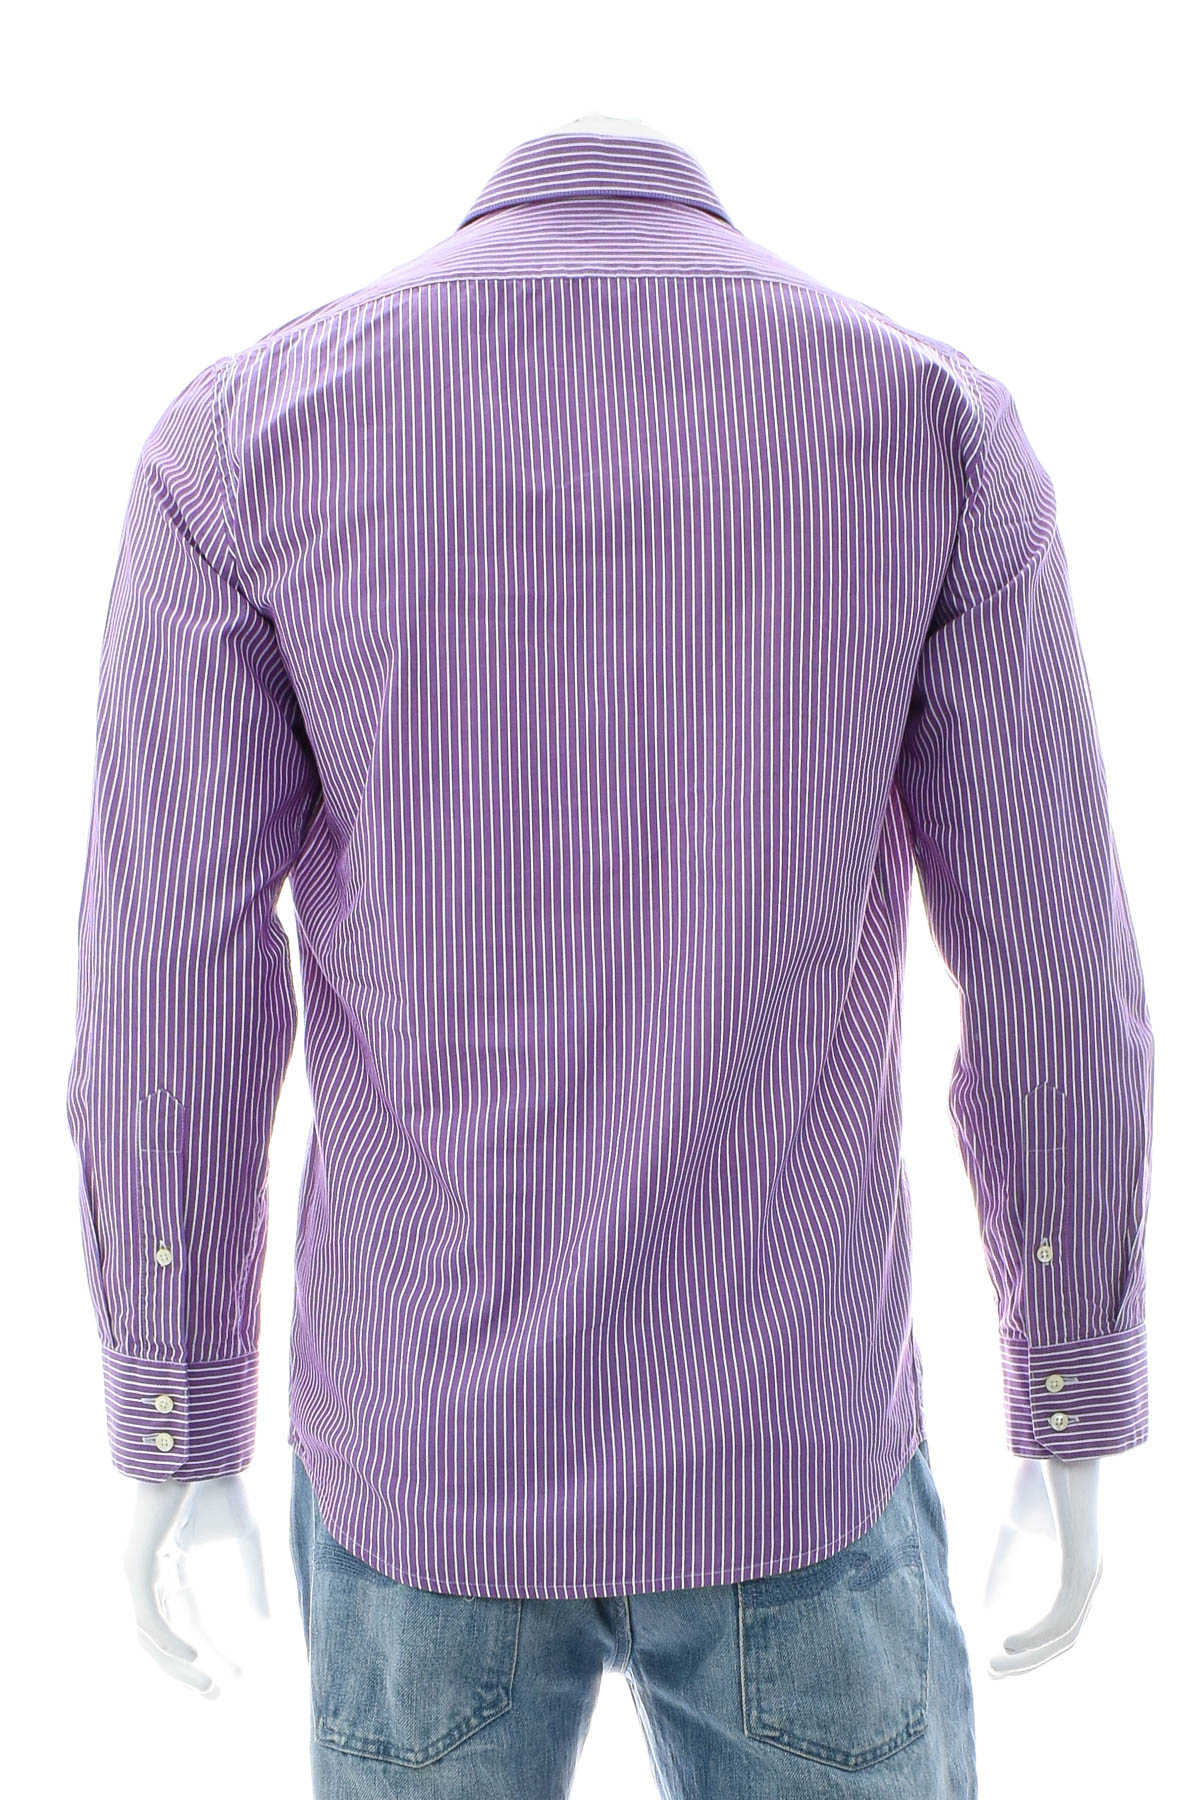 Ανδρικό πουκάμισο - Arido - 1